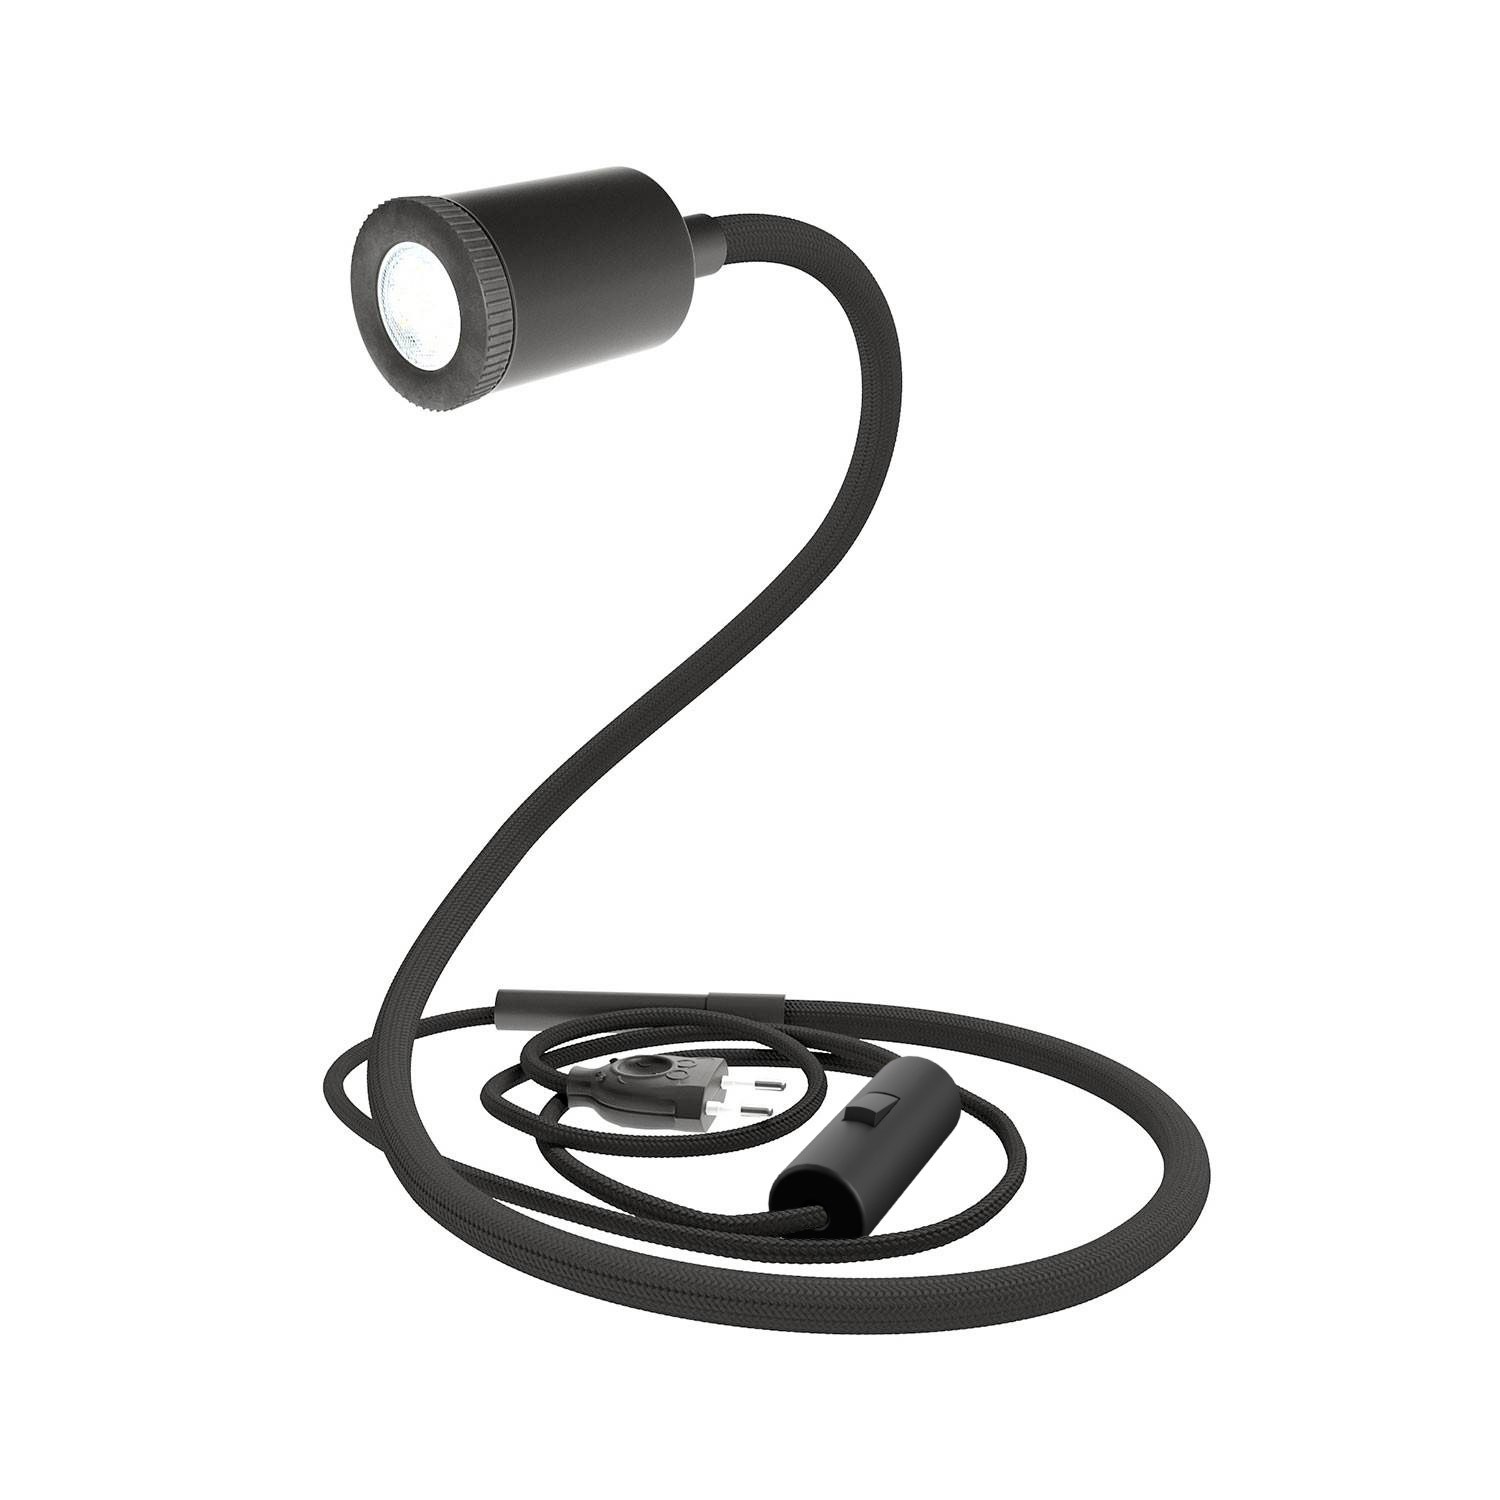 GU1d-one fleksibel lampe uden sokkel med mini LED spotlight